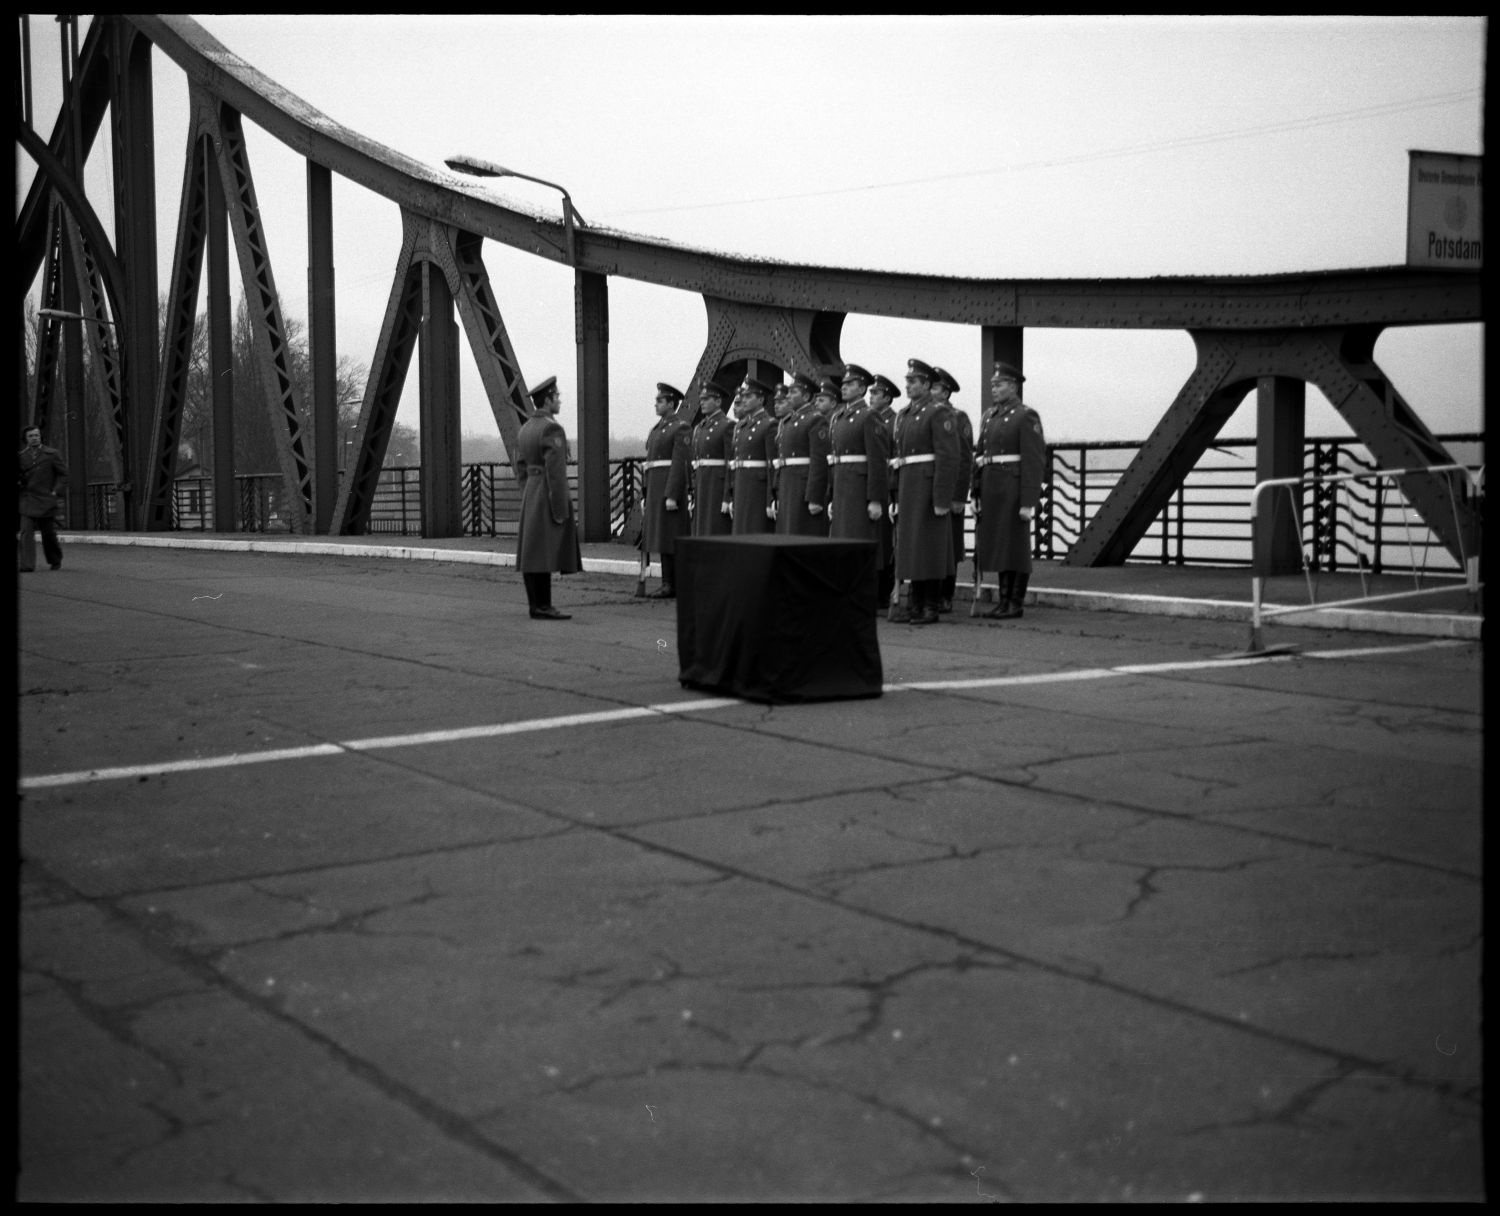 s/w-Fotografie: Überführung der sterblichen Überreste eines sowjetischen Soldaten über die Glienicker Brücke zwischen West-Berlin und Potsdam (AlliiertenMuseum/U.S. Army Photograph Public Domain Mark)